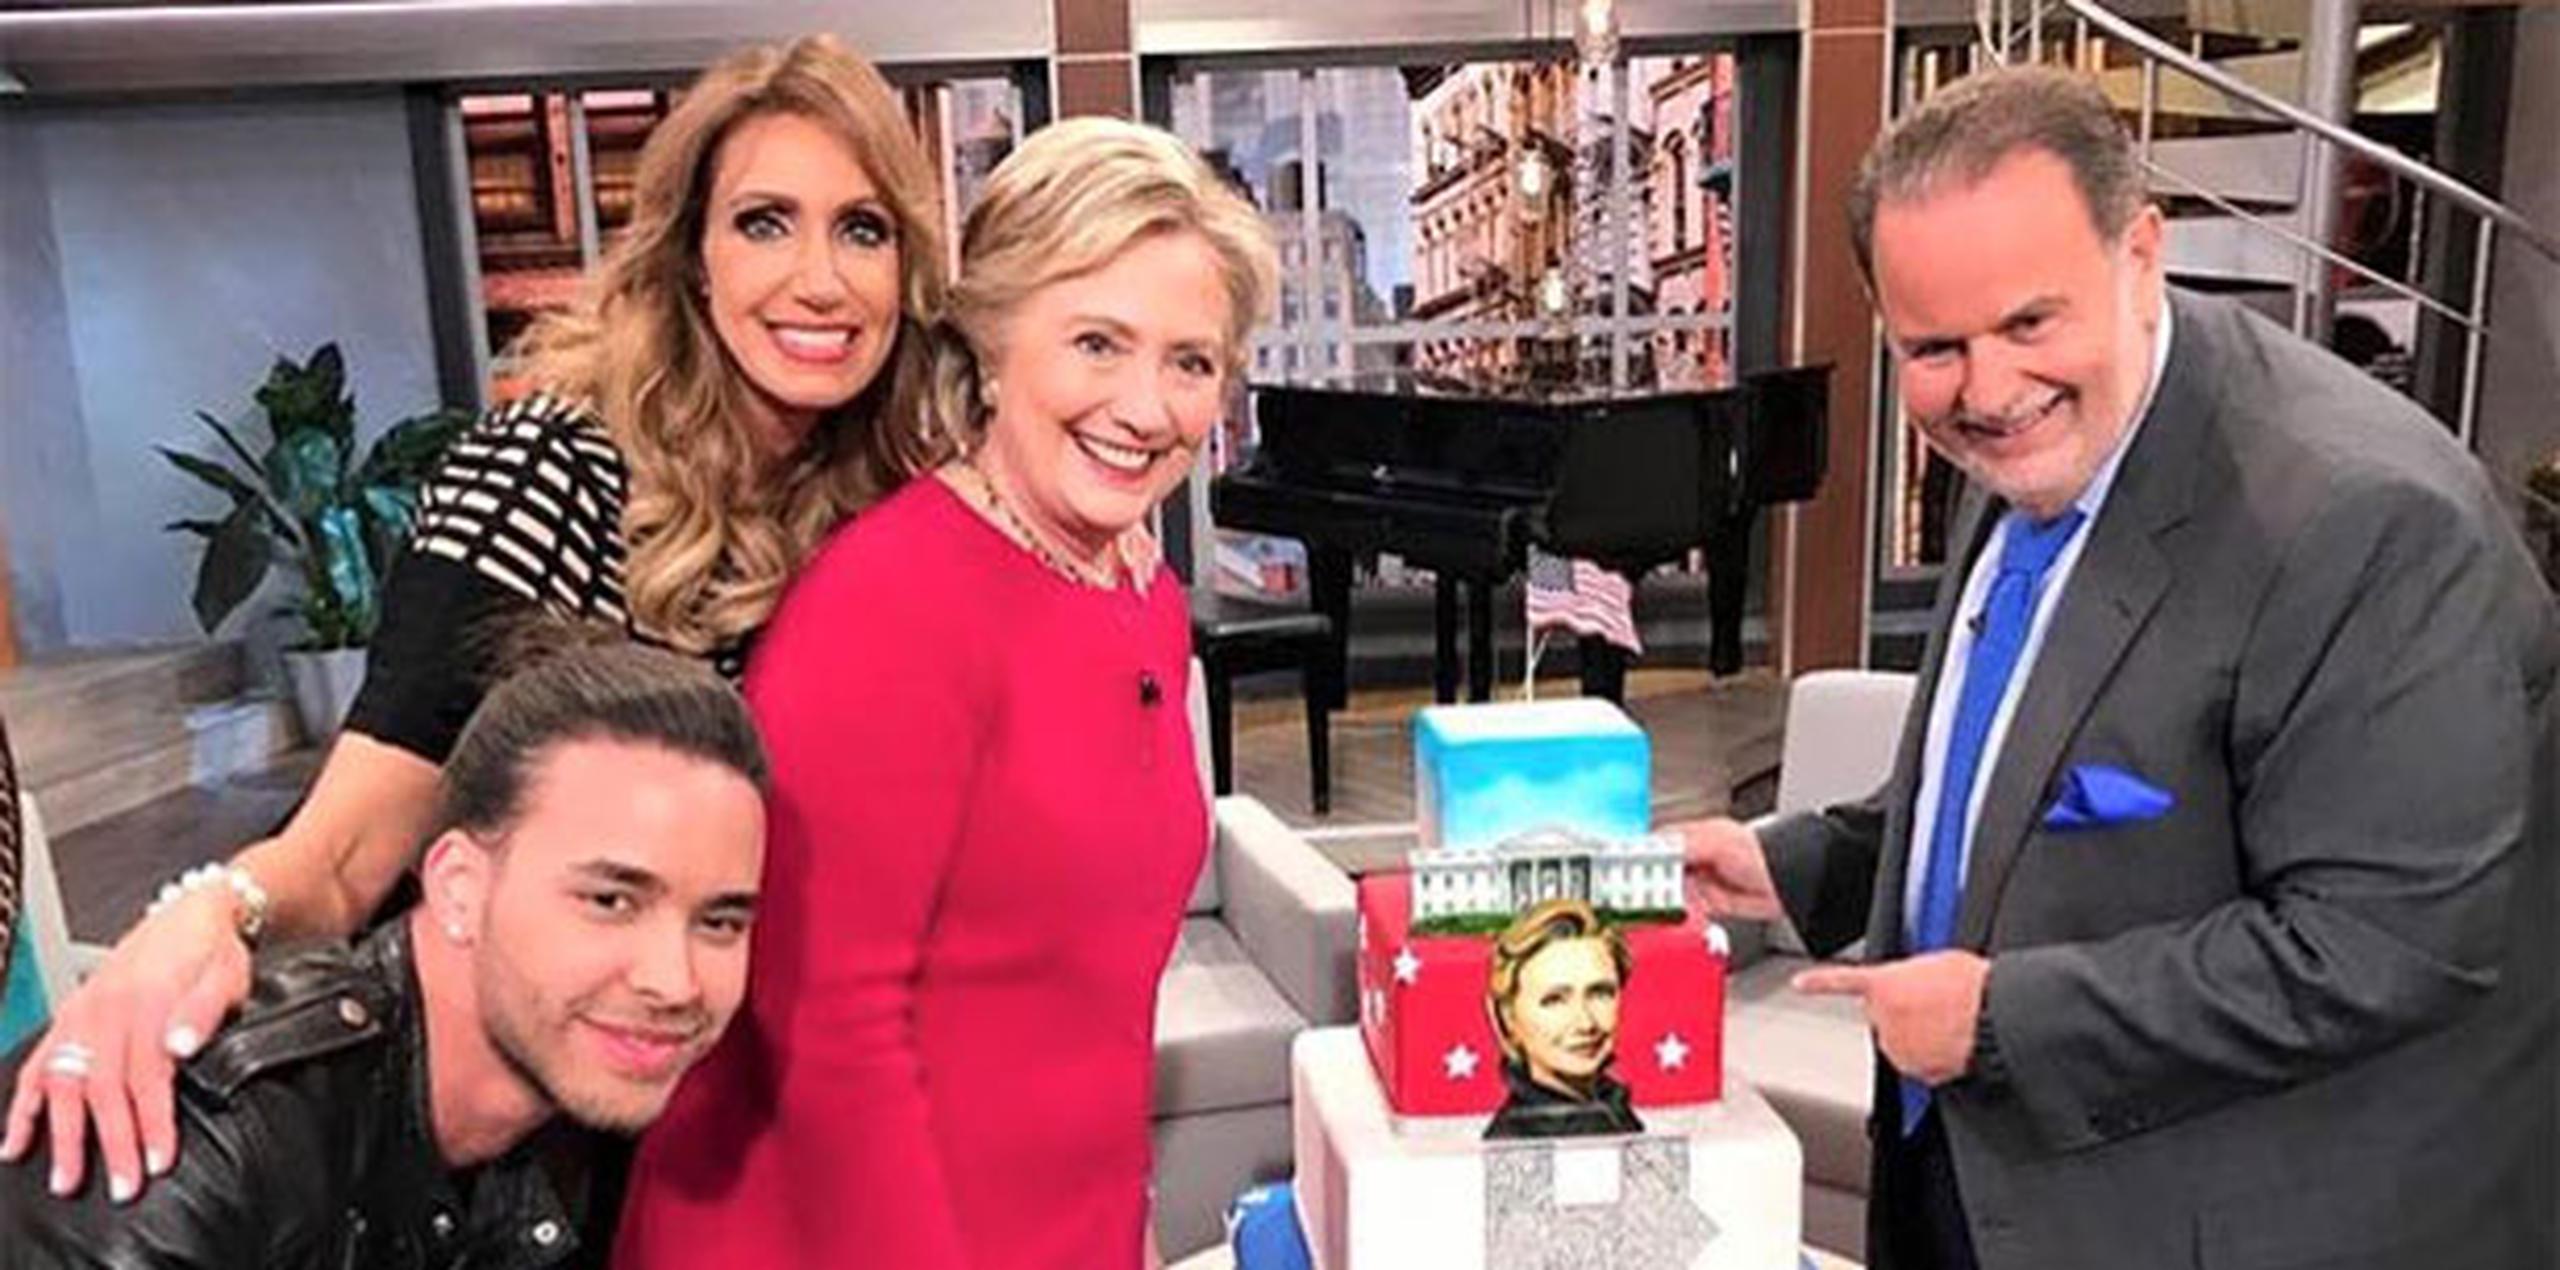 Los presentadores celebraron con un día de anticipación el cumpleaños 69 de Clinton con un bizcocho, y el cantautor Prince Royce entonó el "Cumpleaños Feliz" acompañado de mariachis. (facebook)